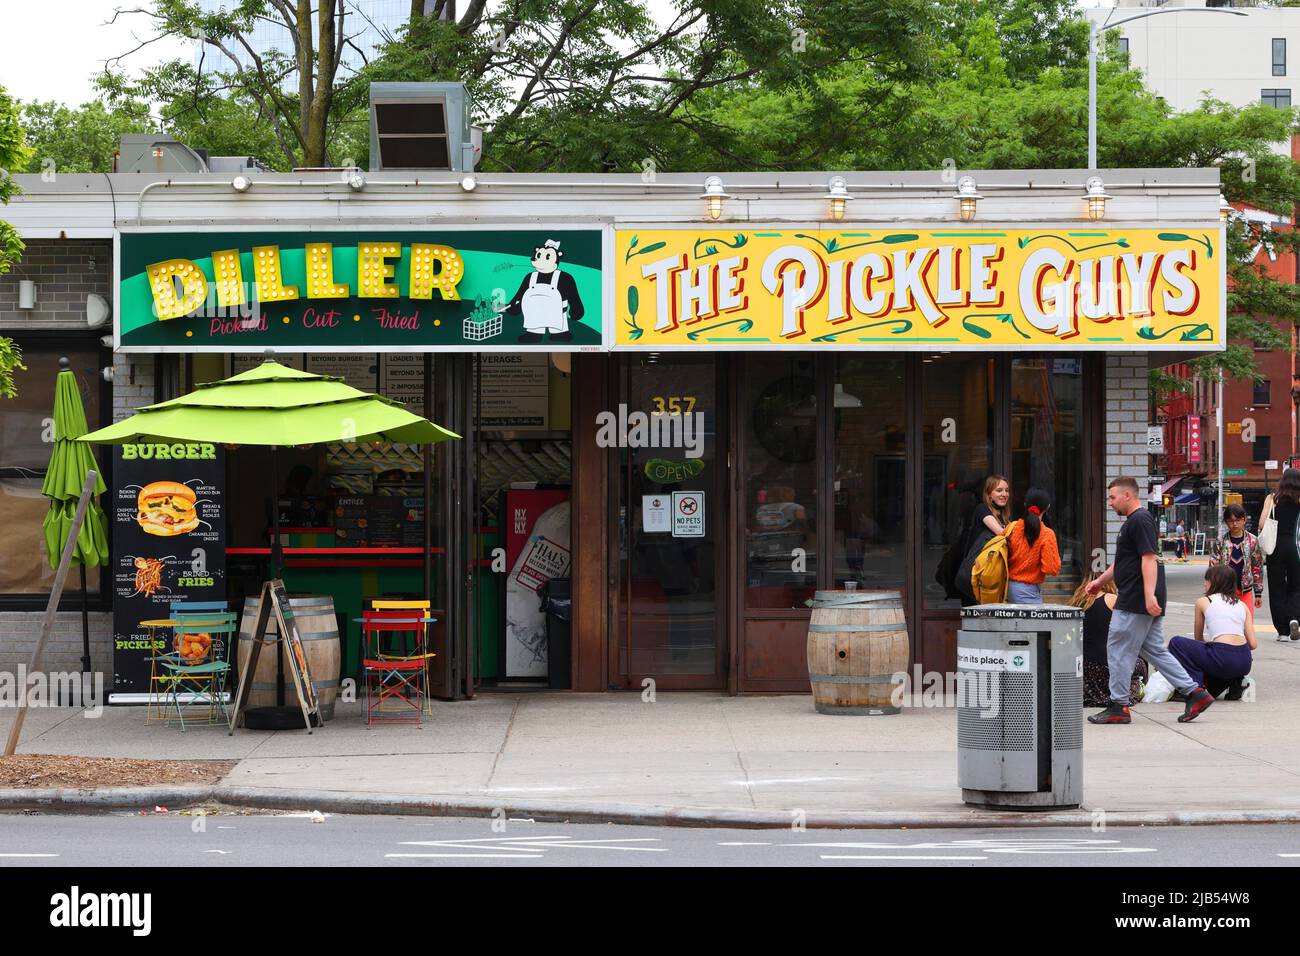 The Pickle Guys, Diller, 357 Grand St, New York, NYC Schaufensterfoto eines Pickle-Ladens und eines koscheren veganen Restaurants in der Lower East Side. Stockfoto